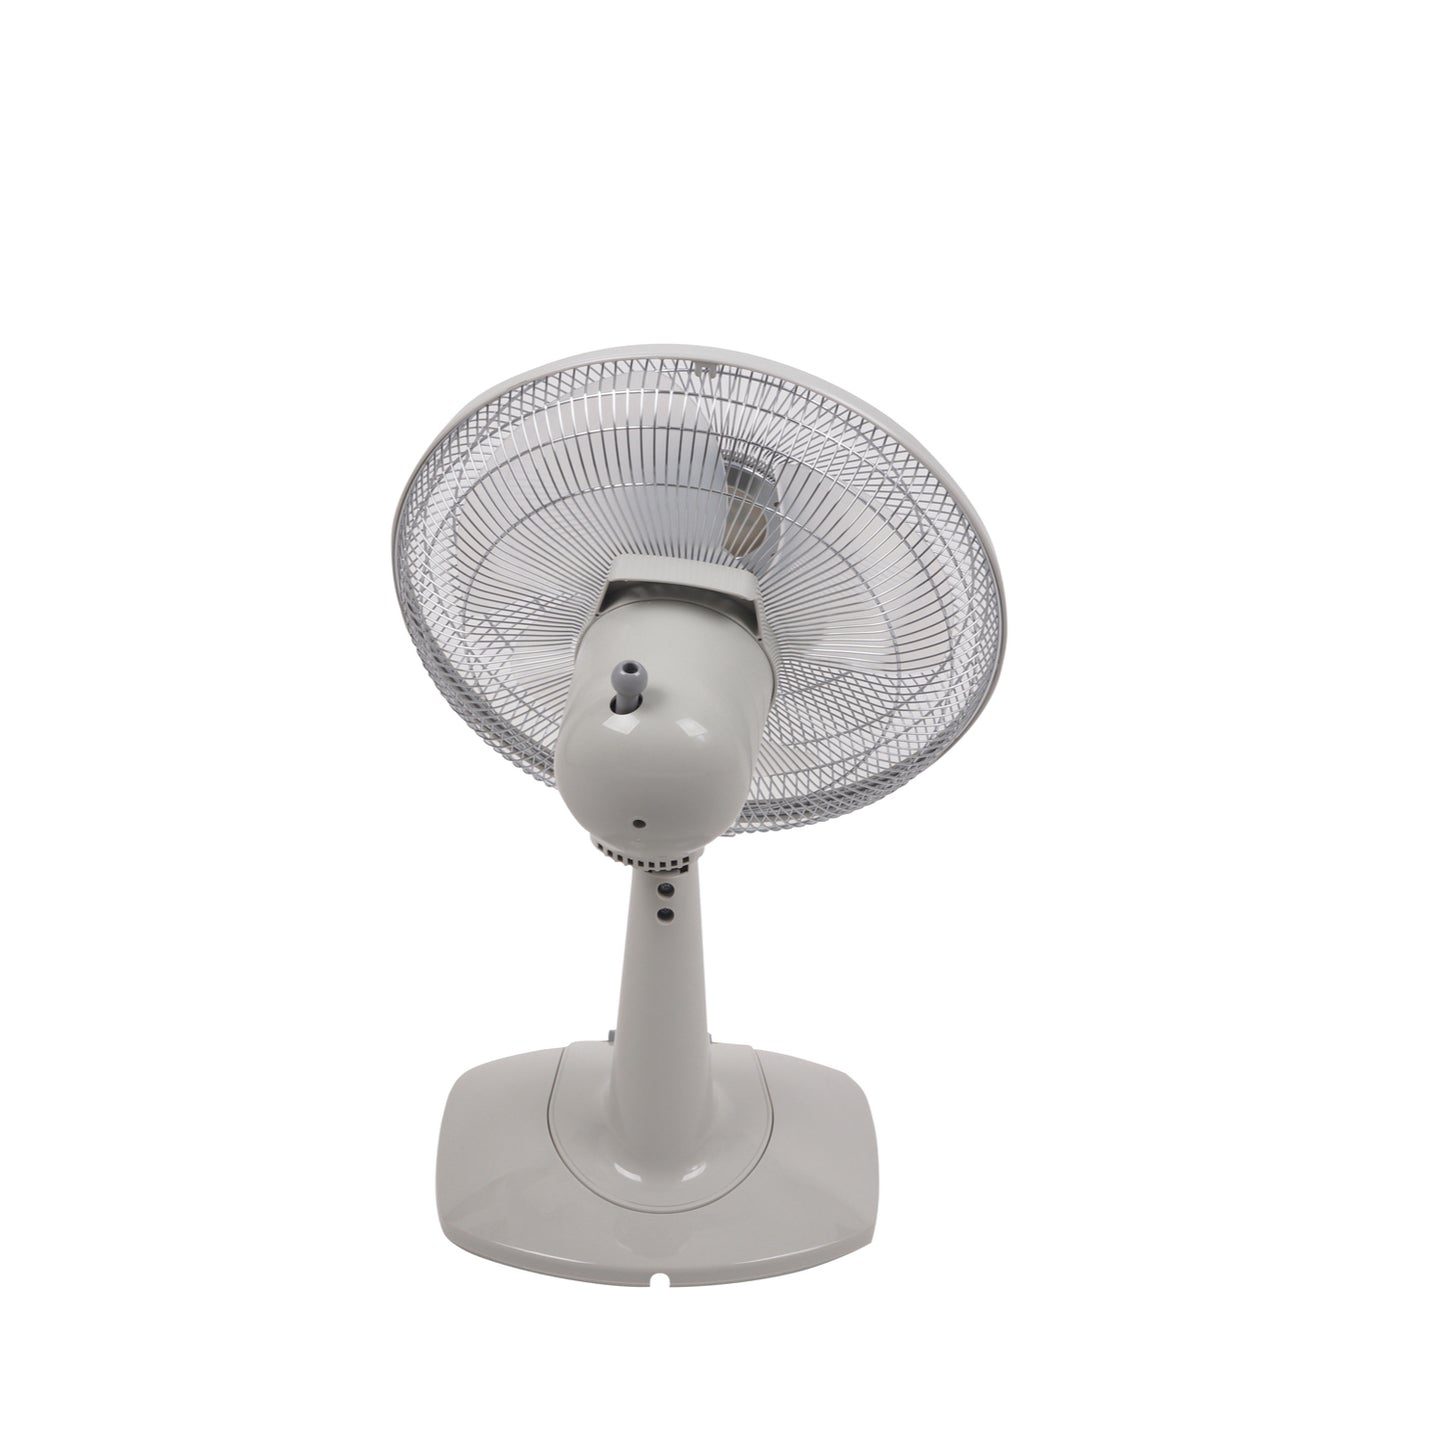 Solis 300mm Ventilator Desk Fan